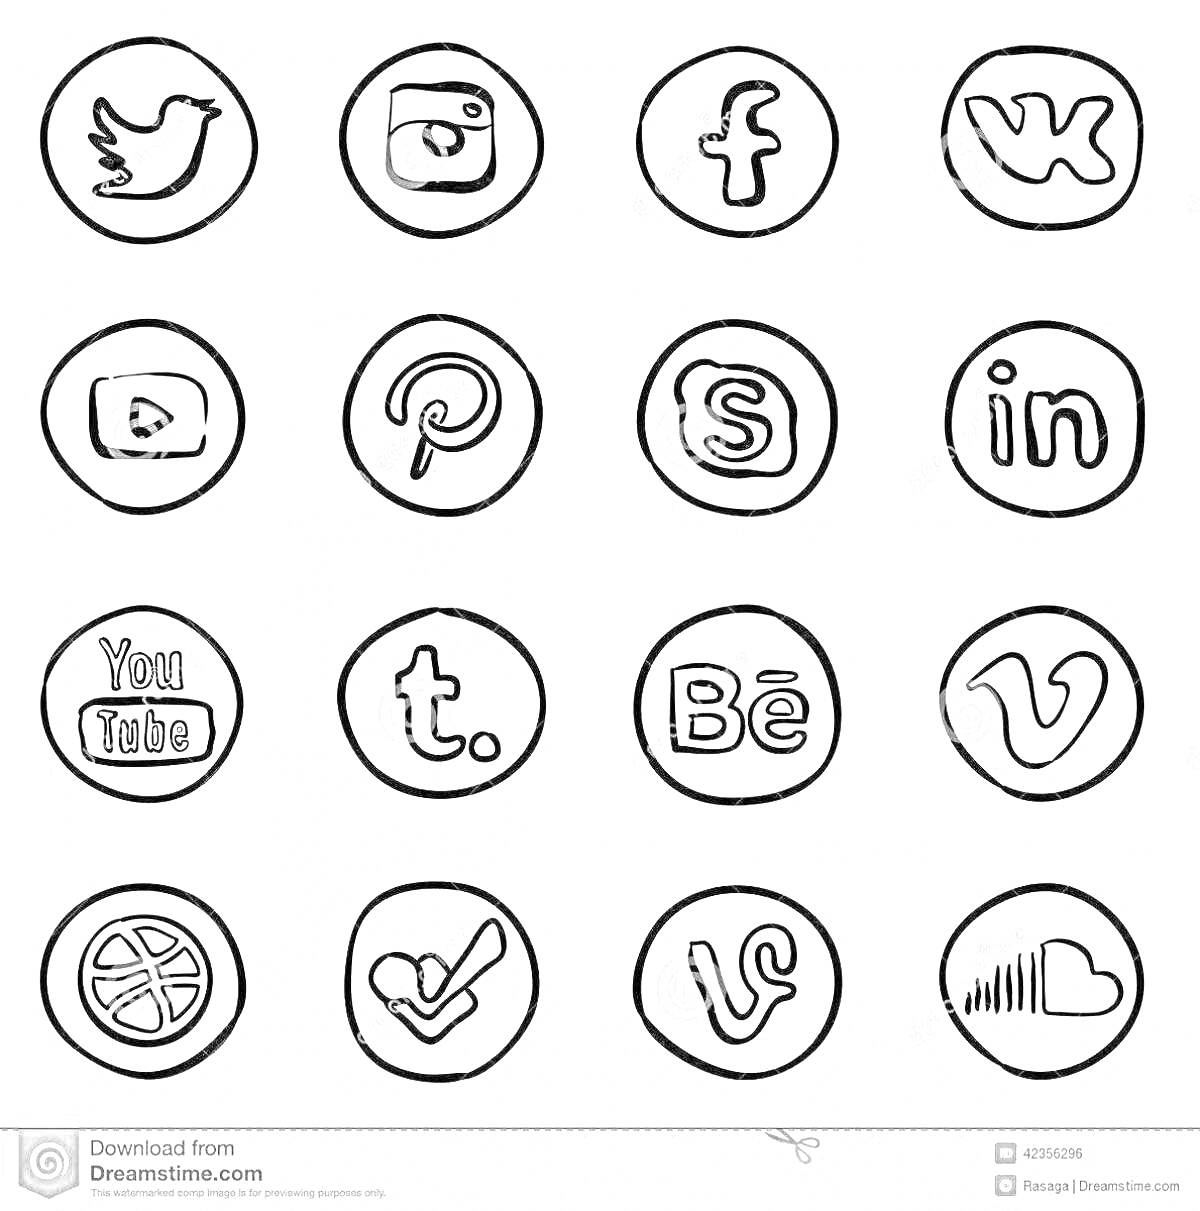 Раскраска Логотипы социальных сетей, нарисованные в контуре круга. Логотипы включают следующие соцсети: Twitter, Instagram, Facebook, VK (ВКонтакте), YouTube, Pinterest, Skype, LinkedIn, Tumblr, Behance, Vimeo, Dribbble, Foursquare, Vine, SoundCloud.